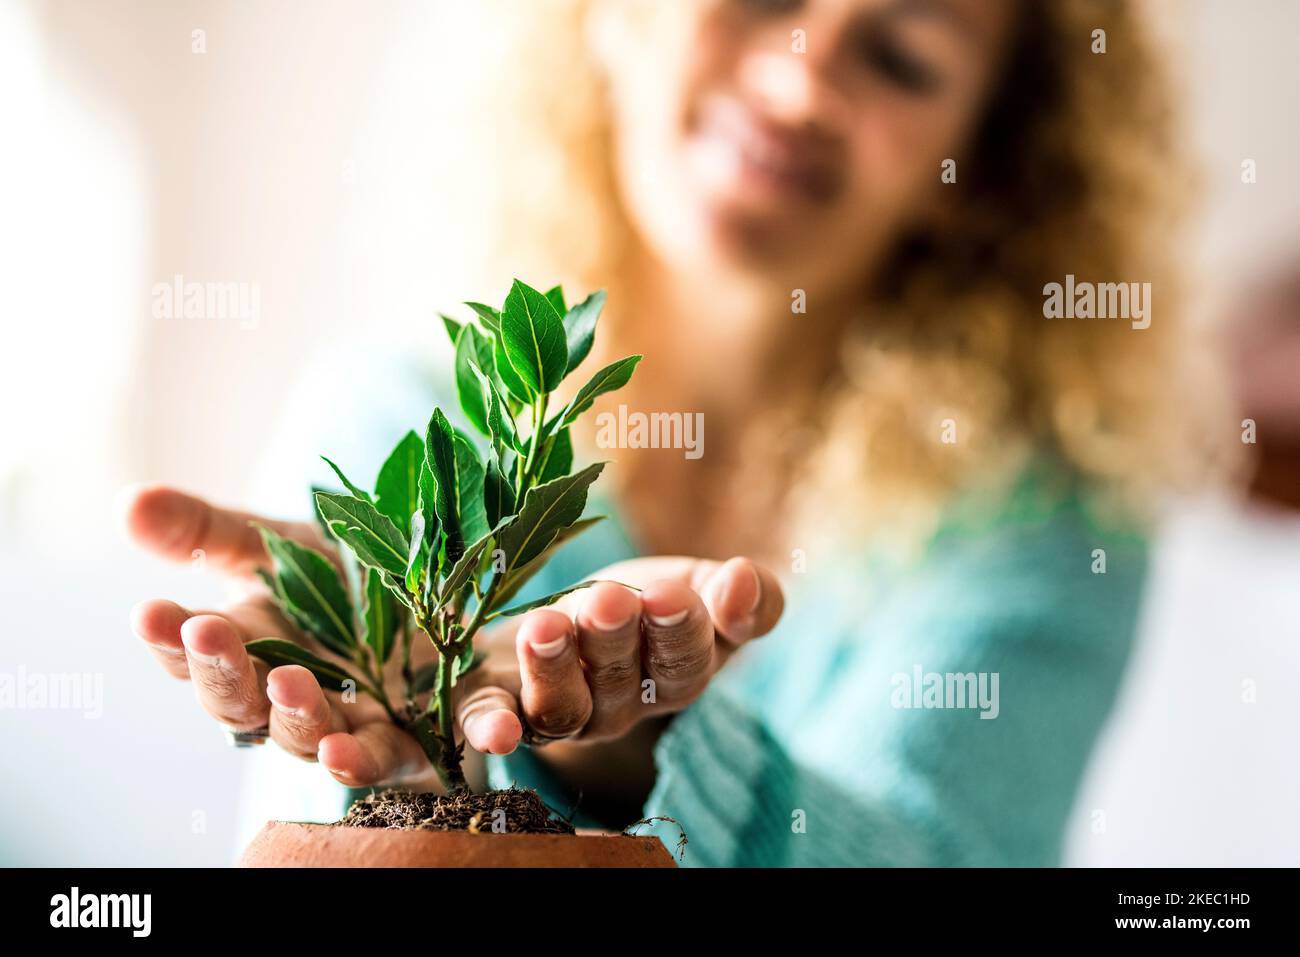 primo piano e ritratto della donna che si prende cura di una piccola pianta all'interno della sua casa - pianta che cresce Foto Stock